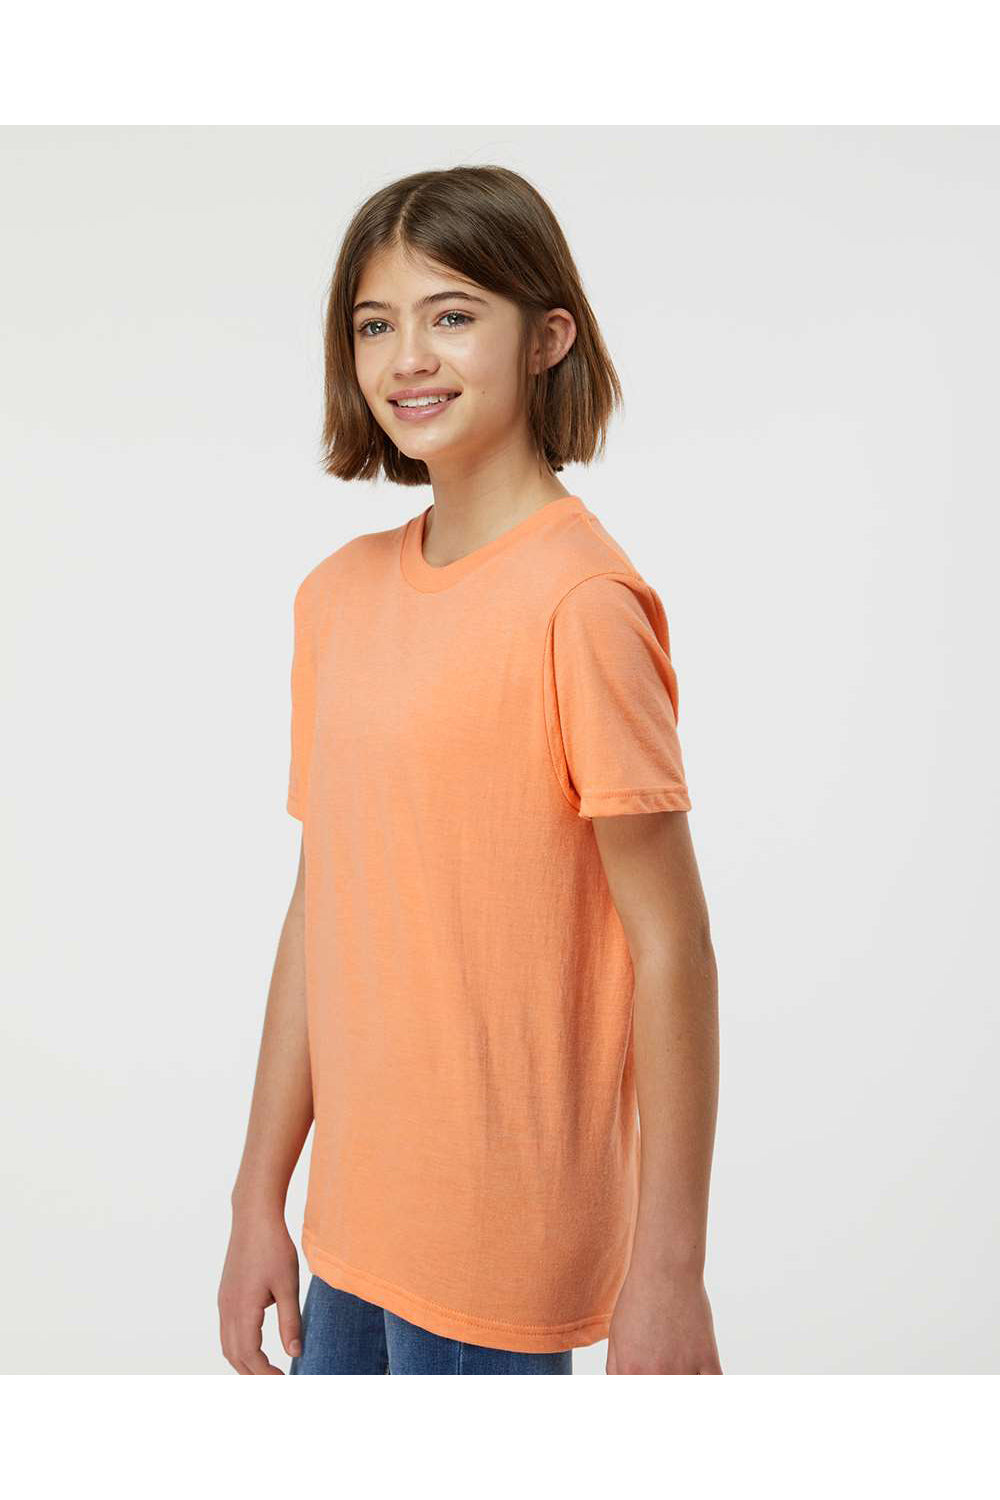 Tultex 235 Youth Fine Jersey Short Sleeve Crewneck T-Shirt Heather Cantaloupe Orange Model Side